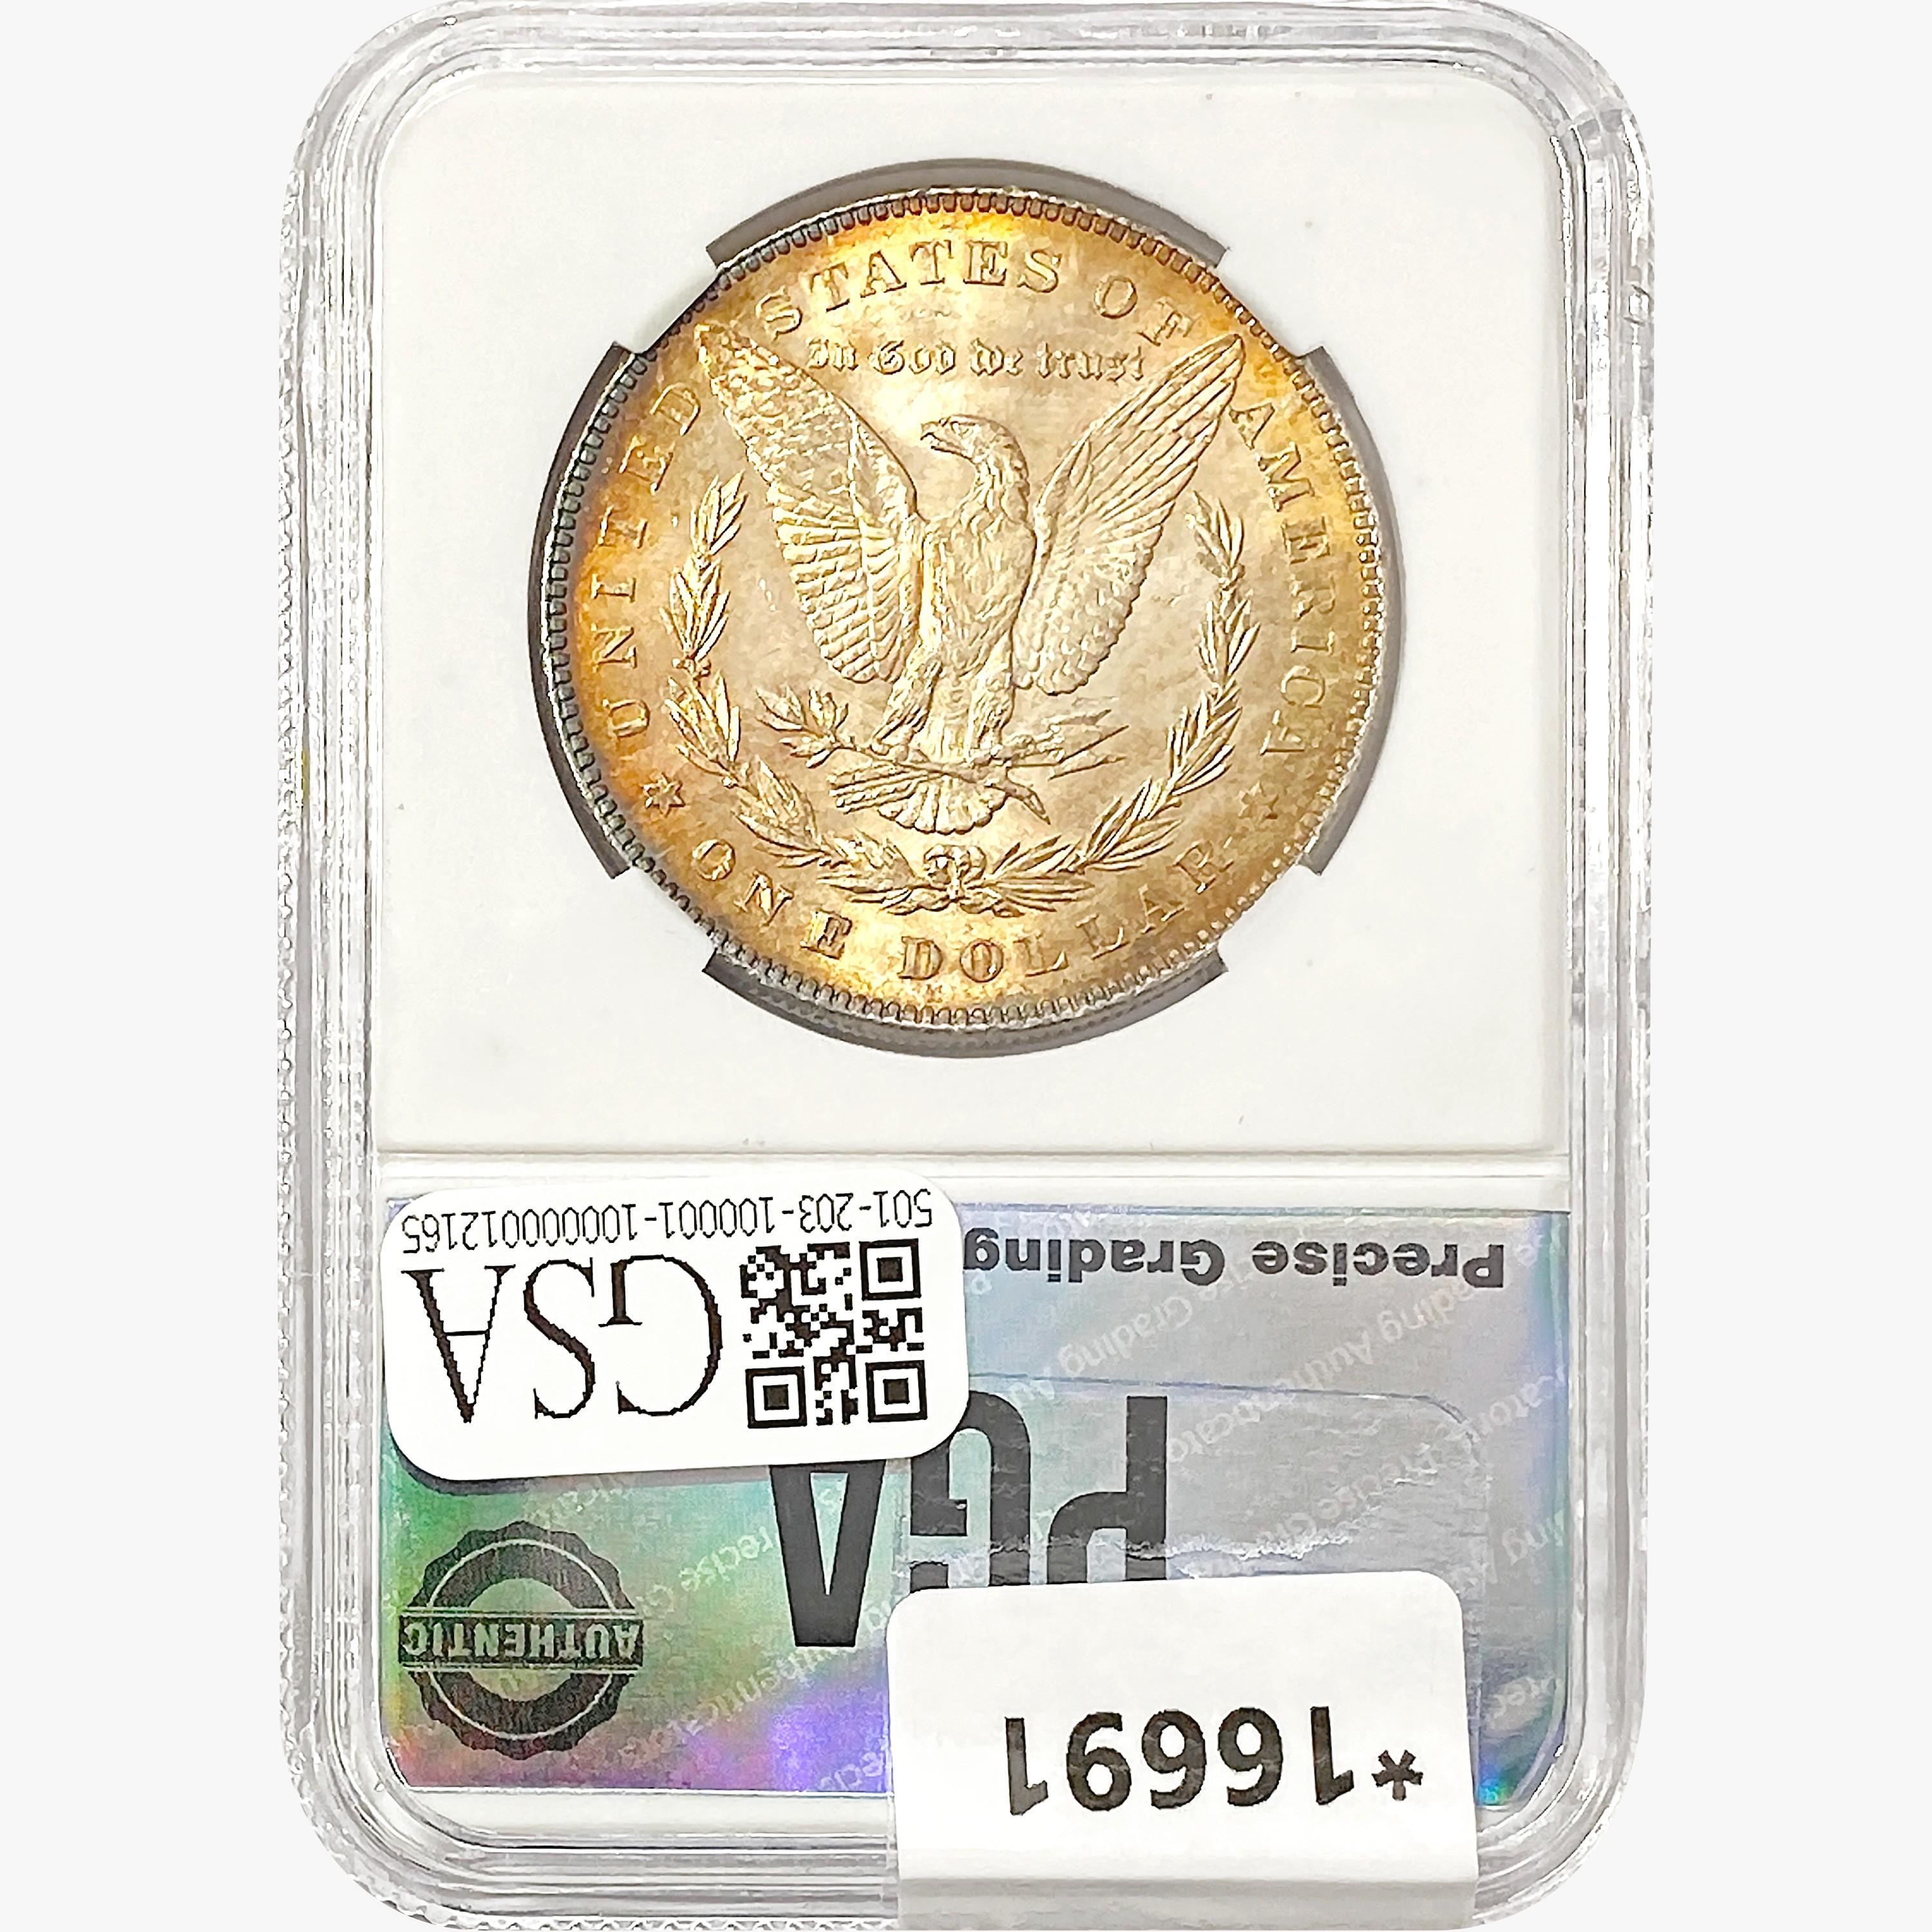 1878 7TF Morgan Silver Dollar PGA MS66 REV 78